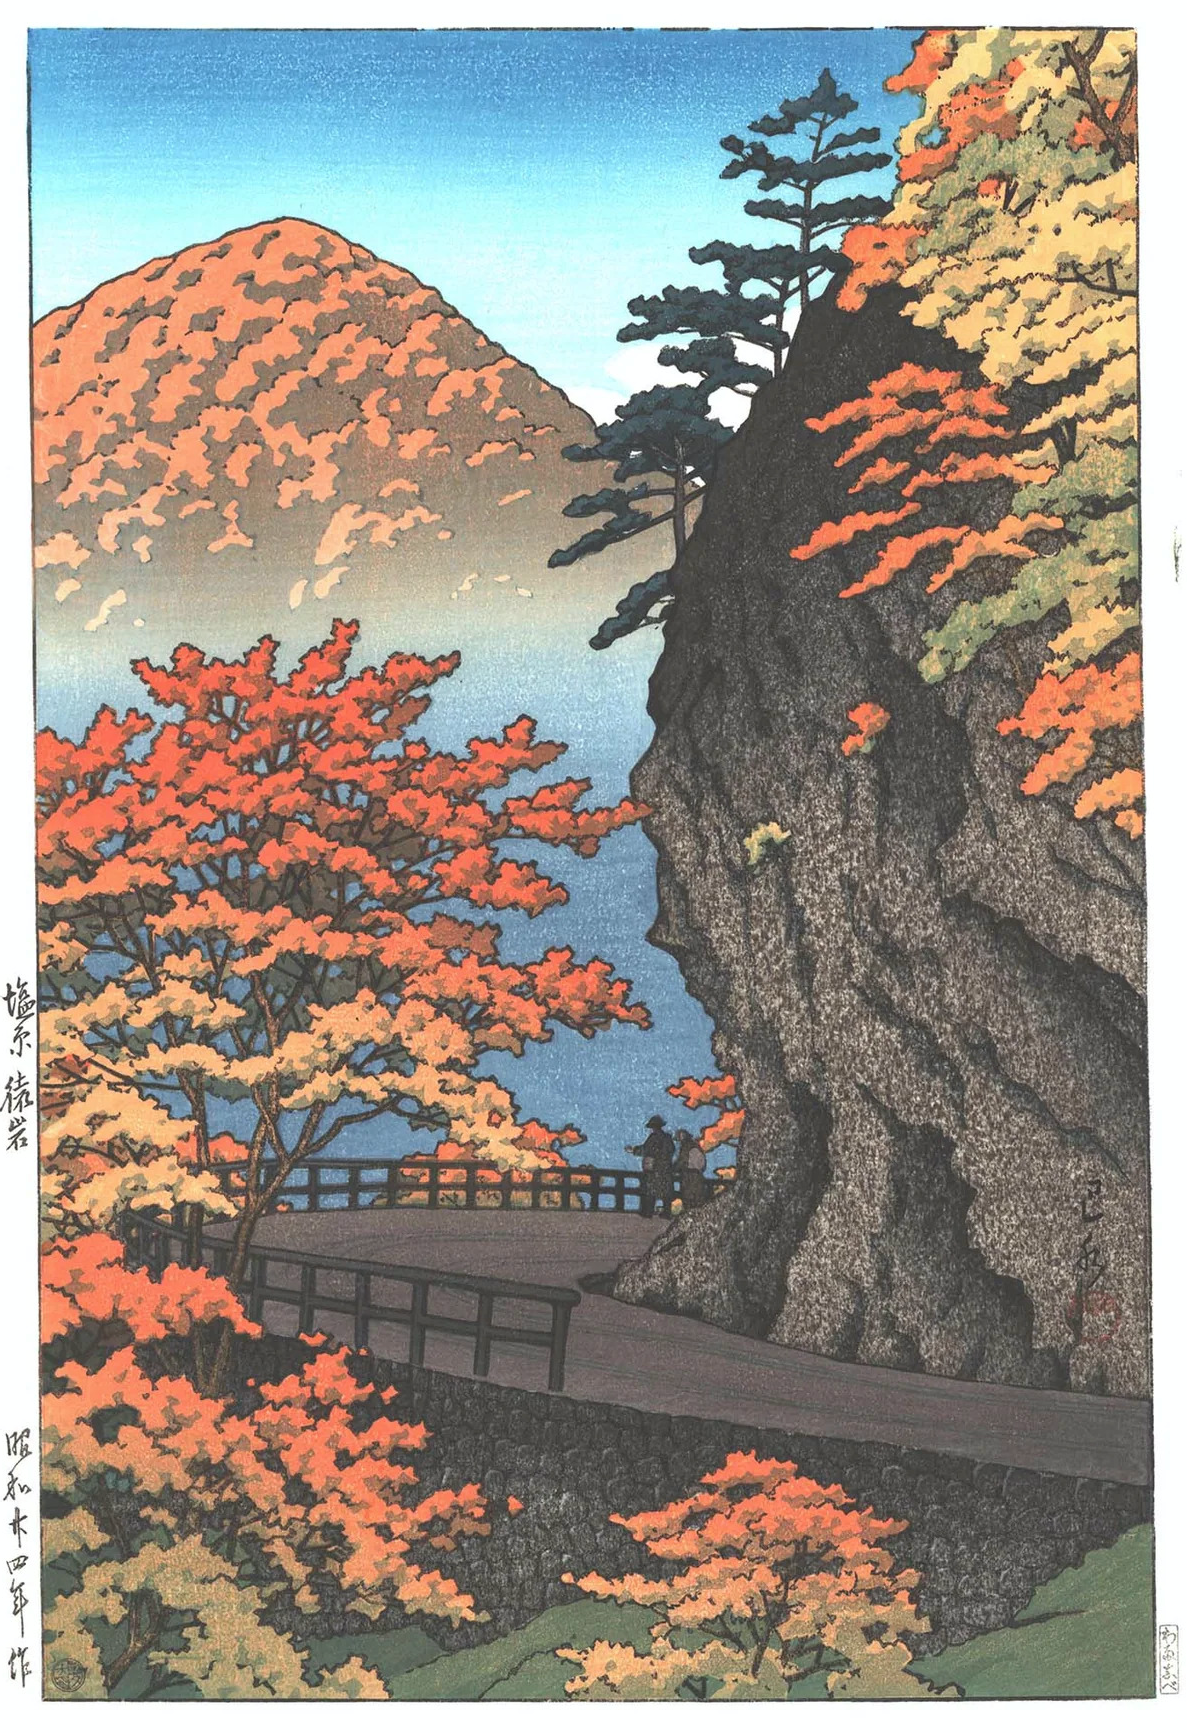 Outono em Saruiwa, Shiobara by Hasui Kawase - 1949 - 38 x 244 cm coleção privada